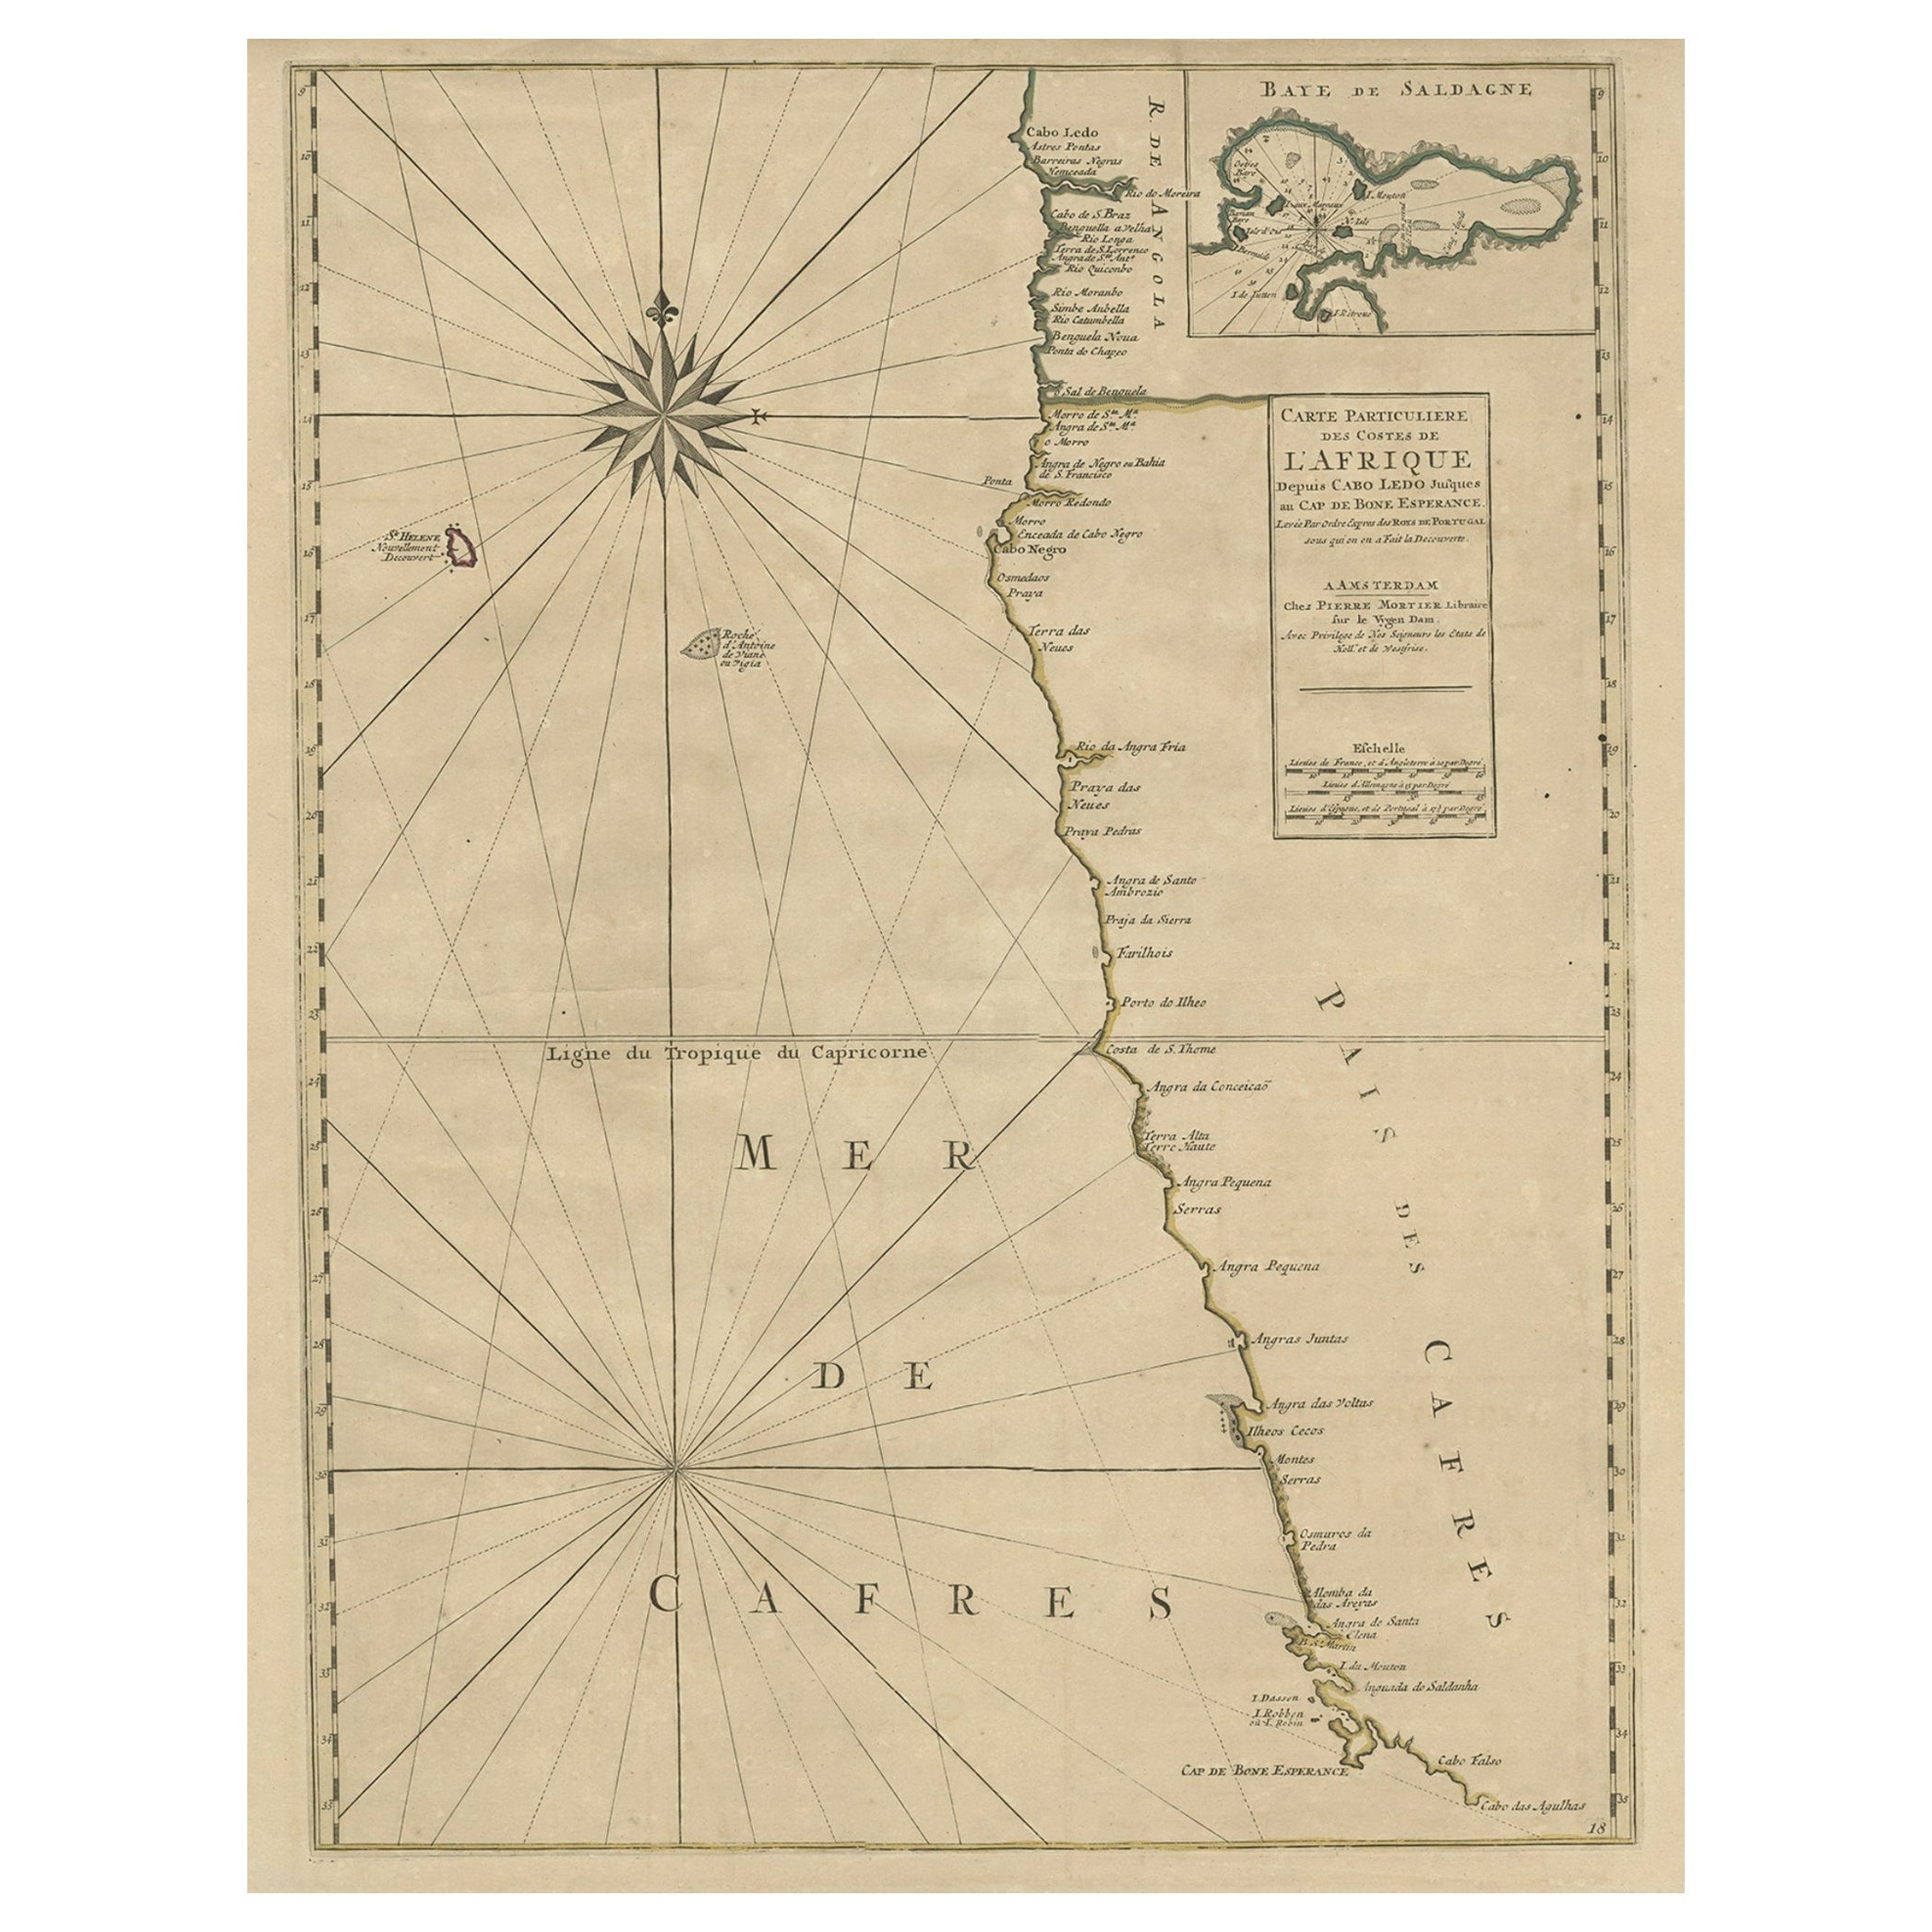 Ancienne carte des côtes de la Namibie et de l'Afrique du Sud et encart de la baie de Saldanha, vers 1700